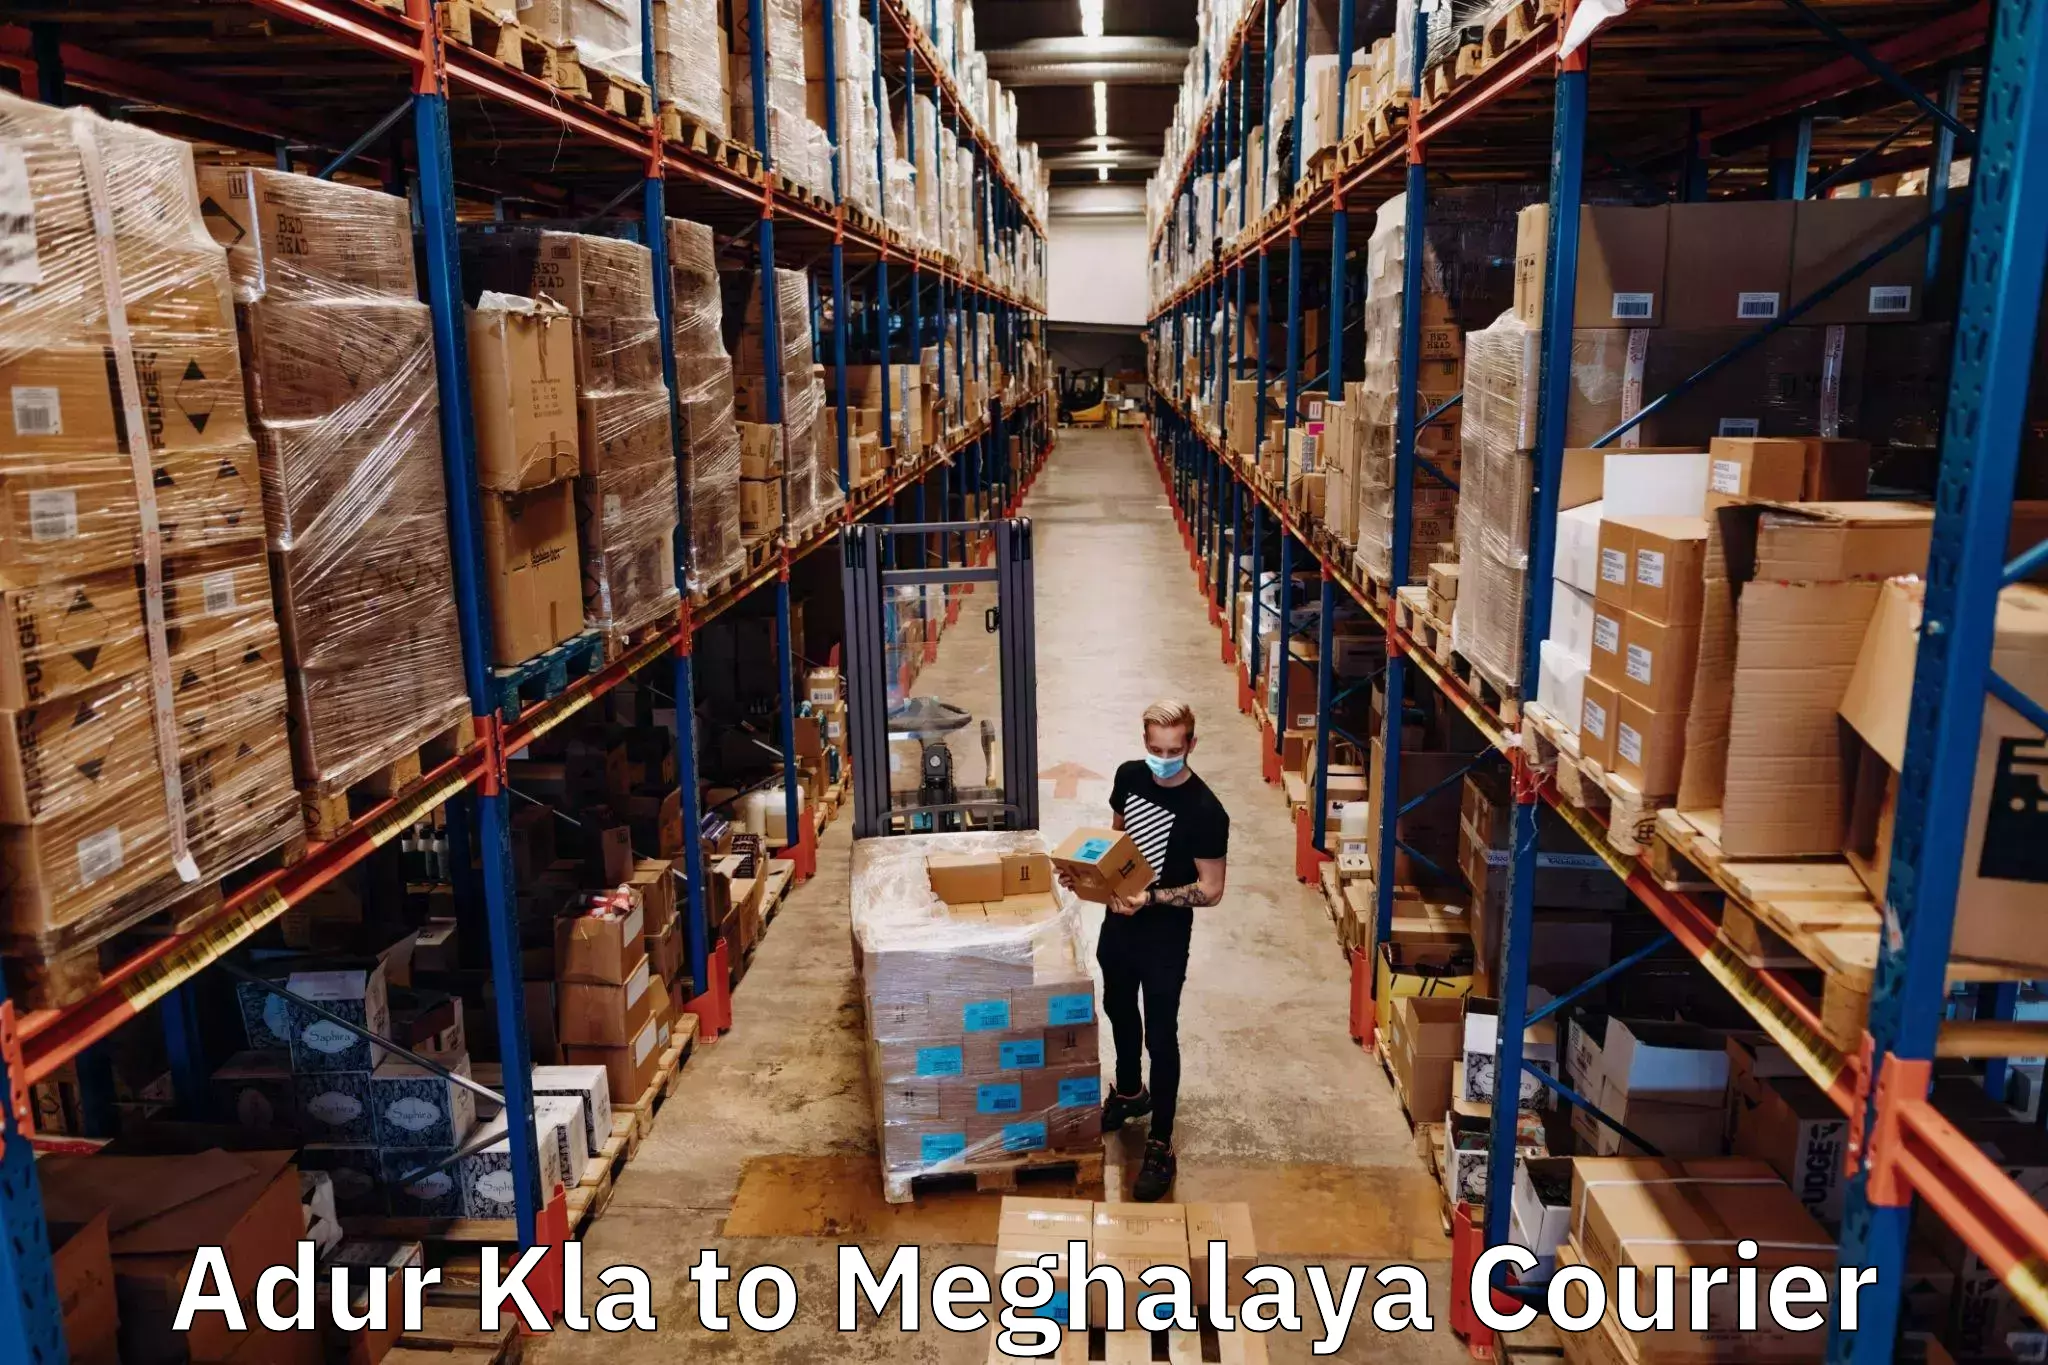 Affordable parcel service Adur Kla to Shillong